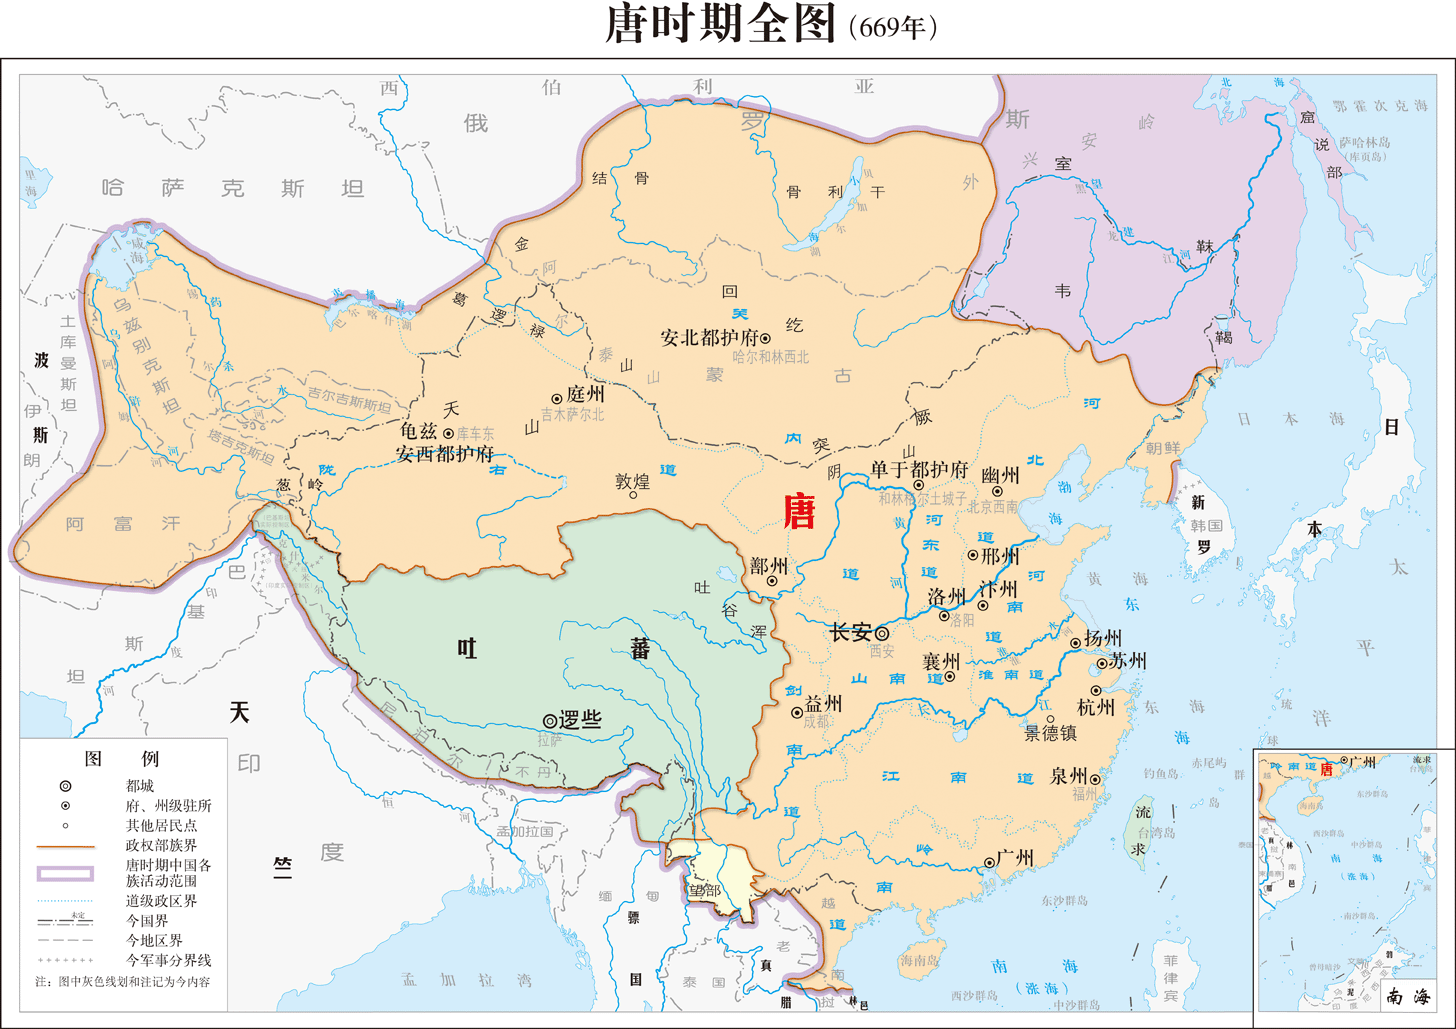 唐朝疆域最西到达了咸海波斯谭其骧将地图开疆玩到了极致